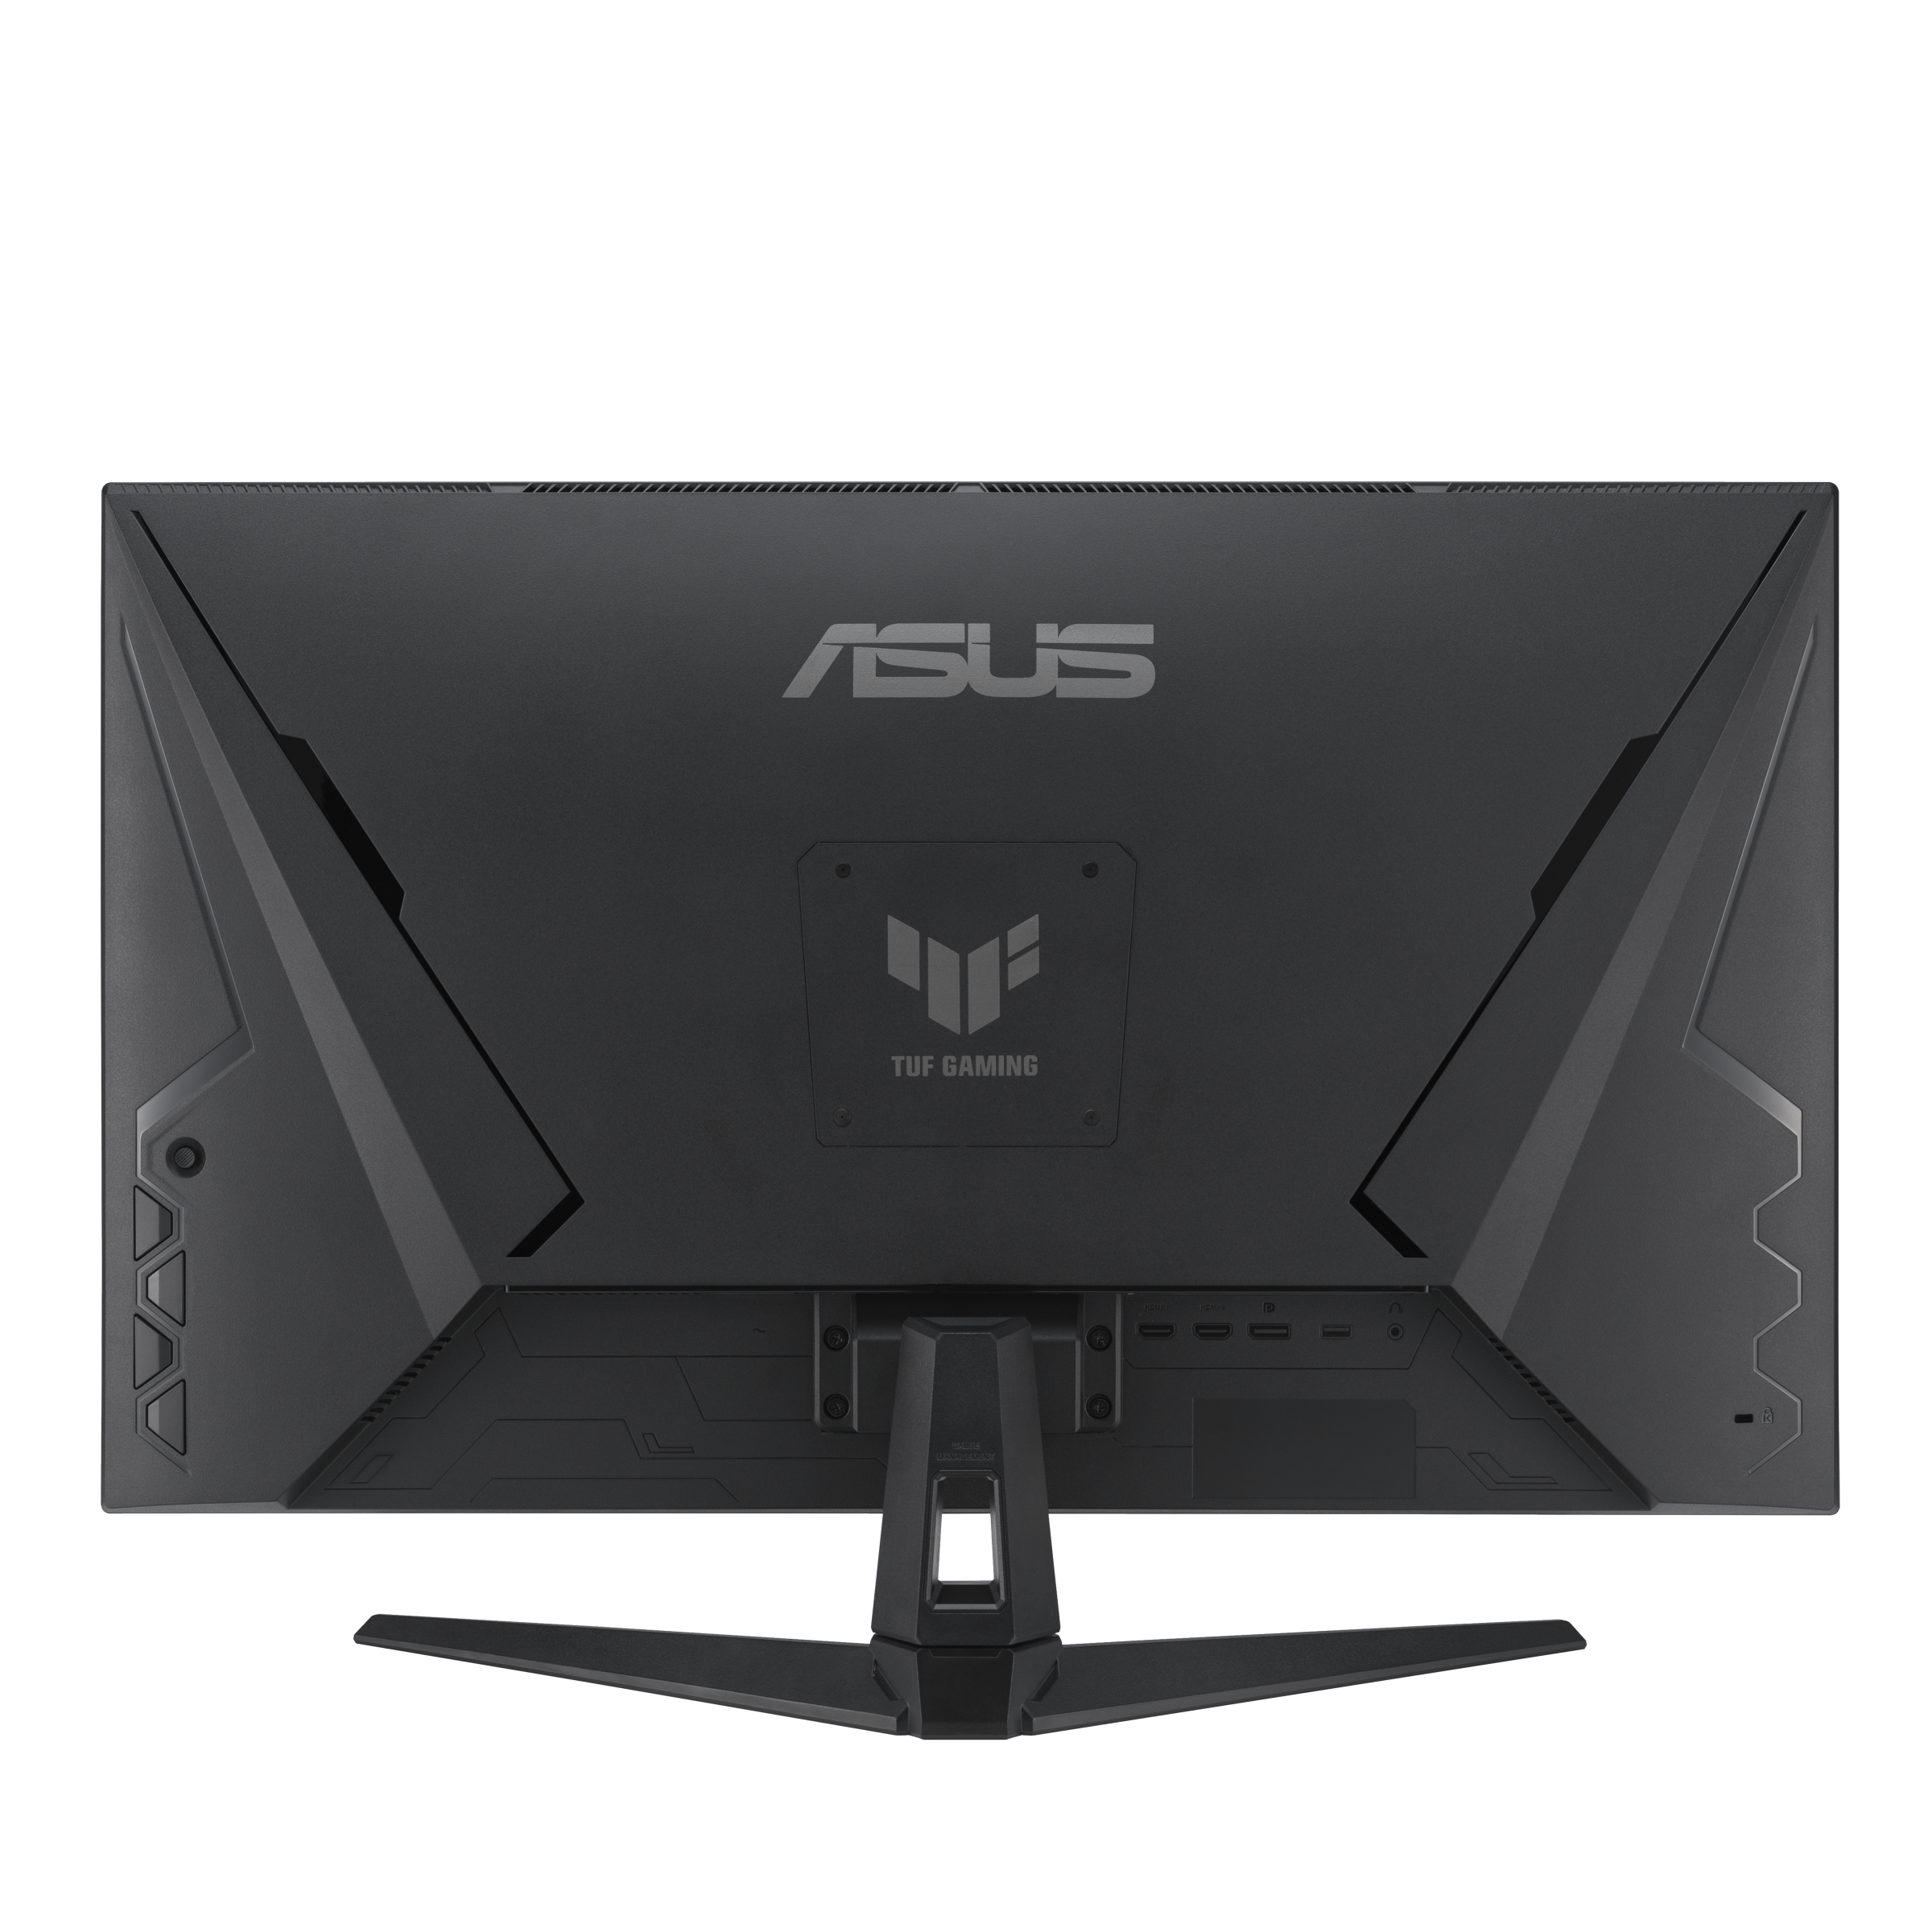 Excellent prix pour cet écran PC incurvé Asus TUF Gaming (29, G-Sync,200Hz)